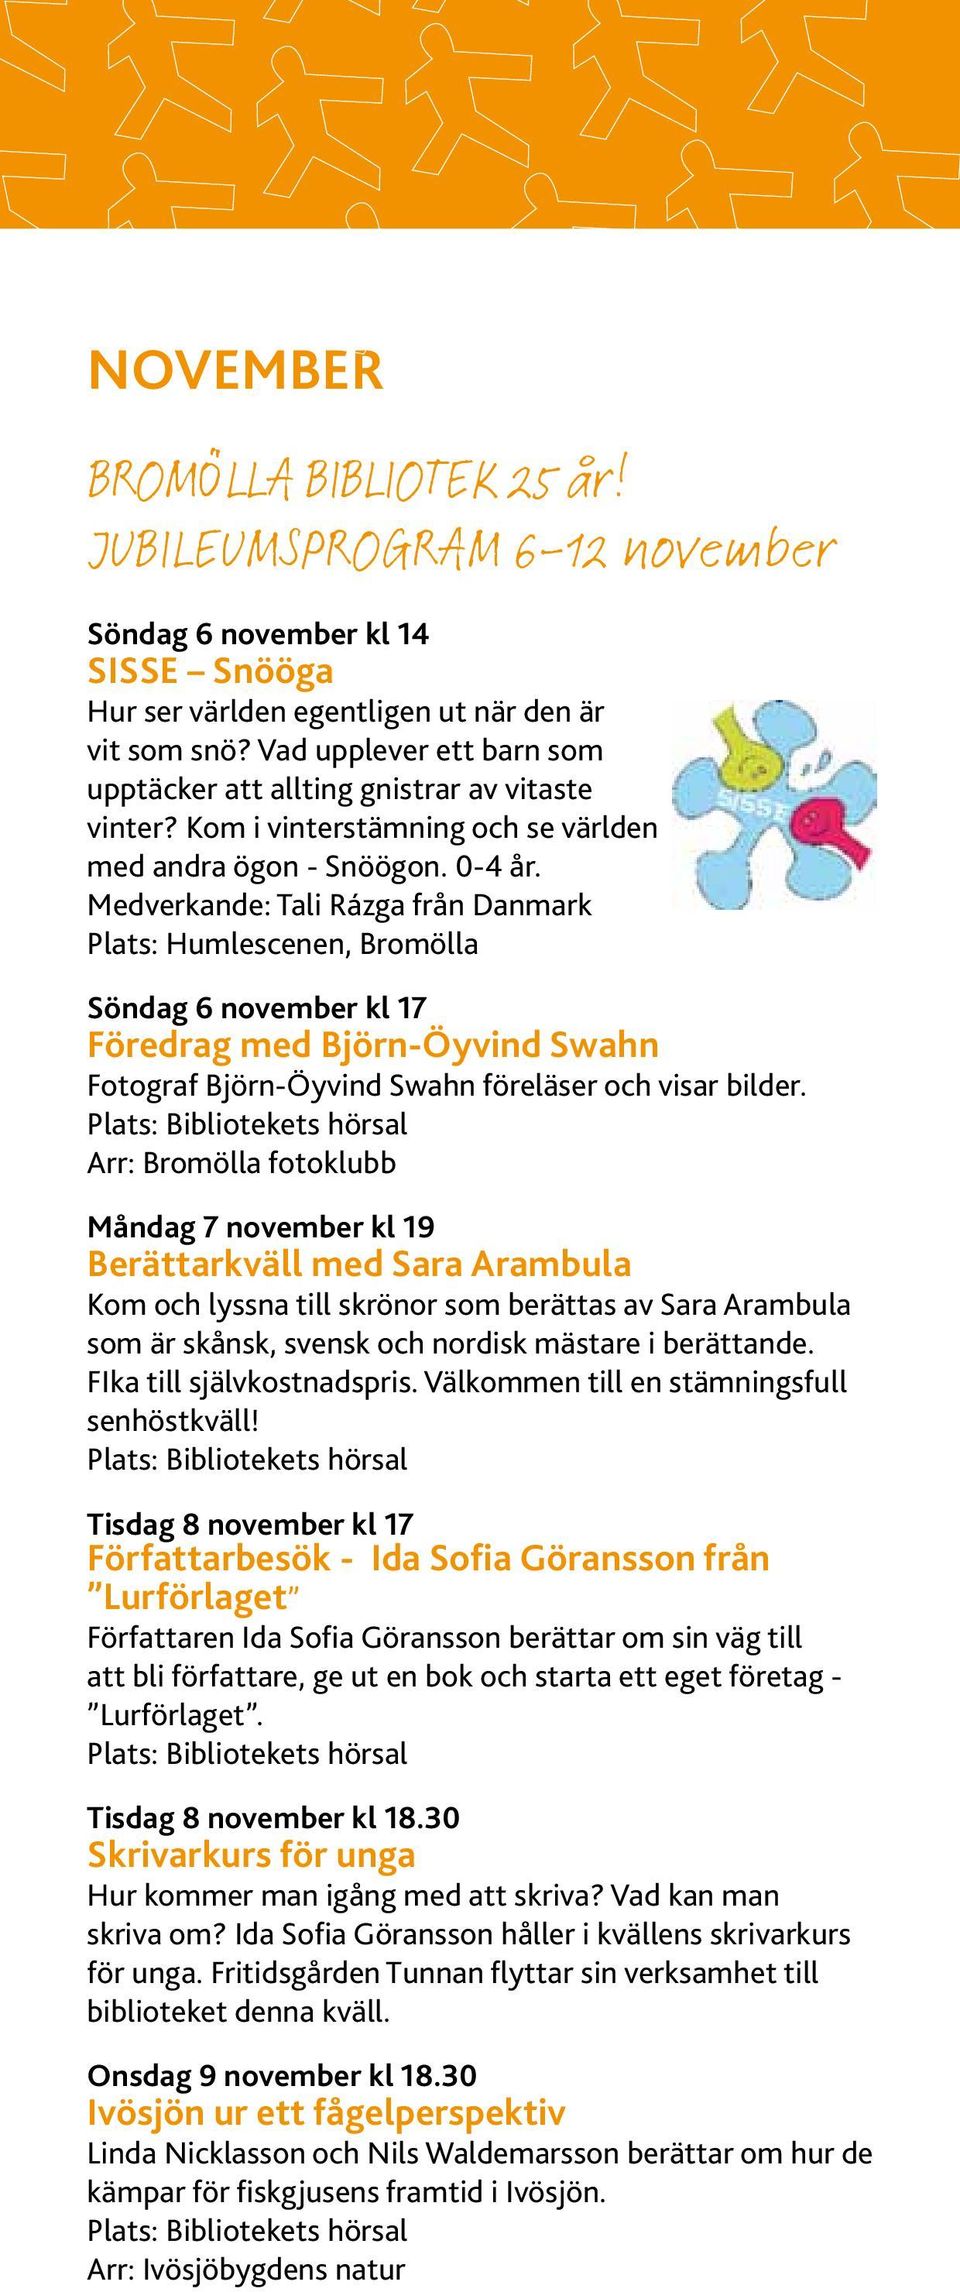 Medverkande: Tali Rázga från Danmark Plats: Humlescenen, Bromölla Söndag 6 november kl 17 Föredrag med Björn-Öyvind Swahn Fotograf Björn-Öyvind Swahn föreläser och visar bilder.